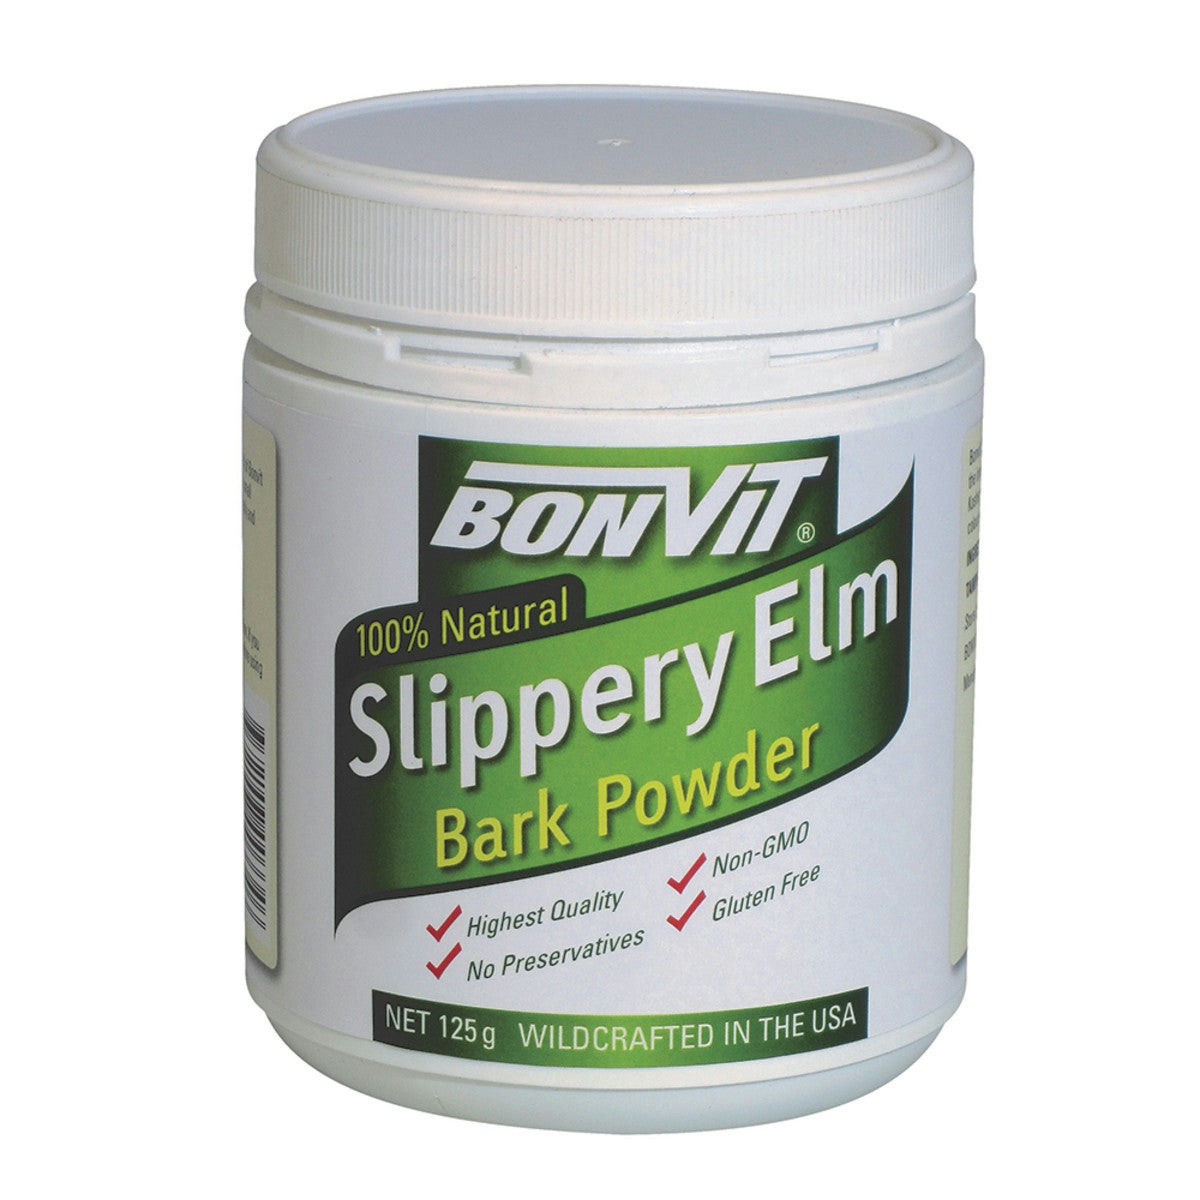 image of Bonvit 100% Natural Slippery Elm Bark Powder 125g on white background 